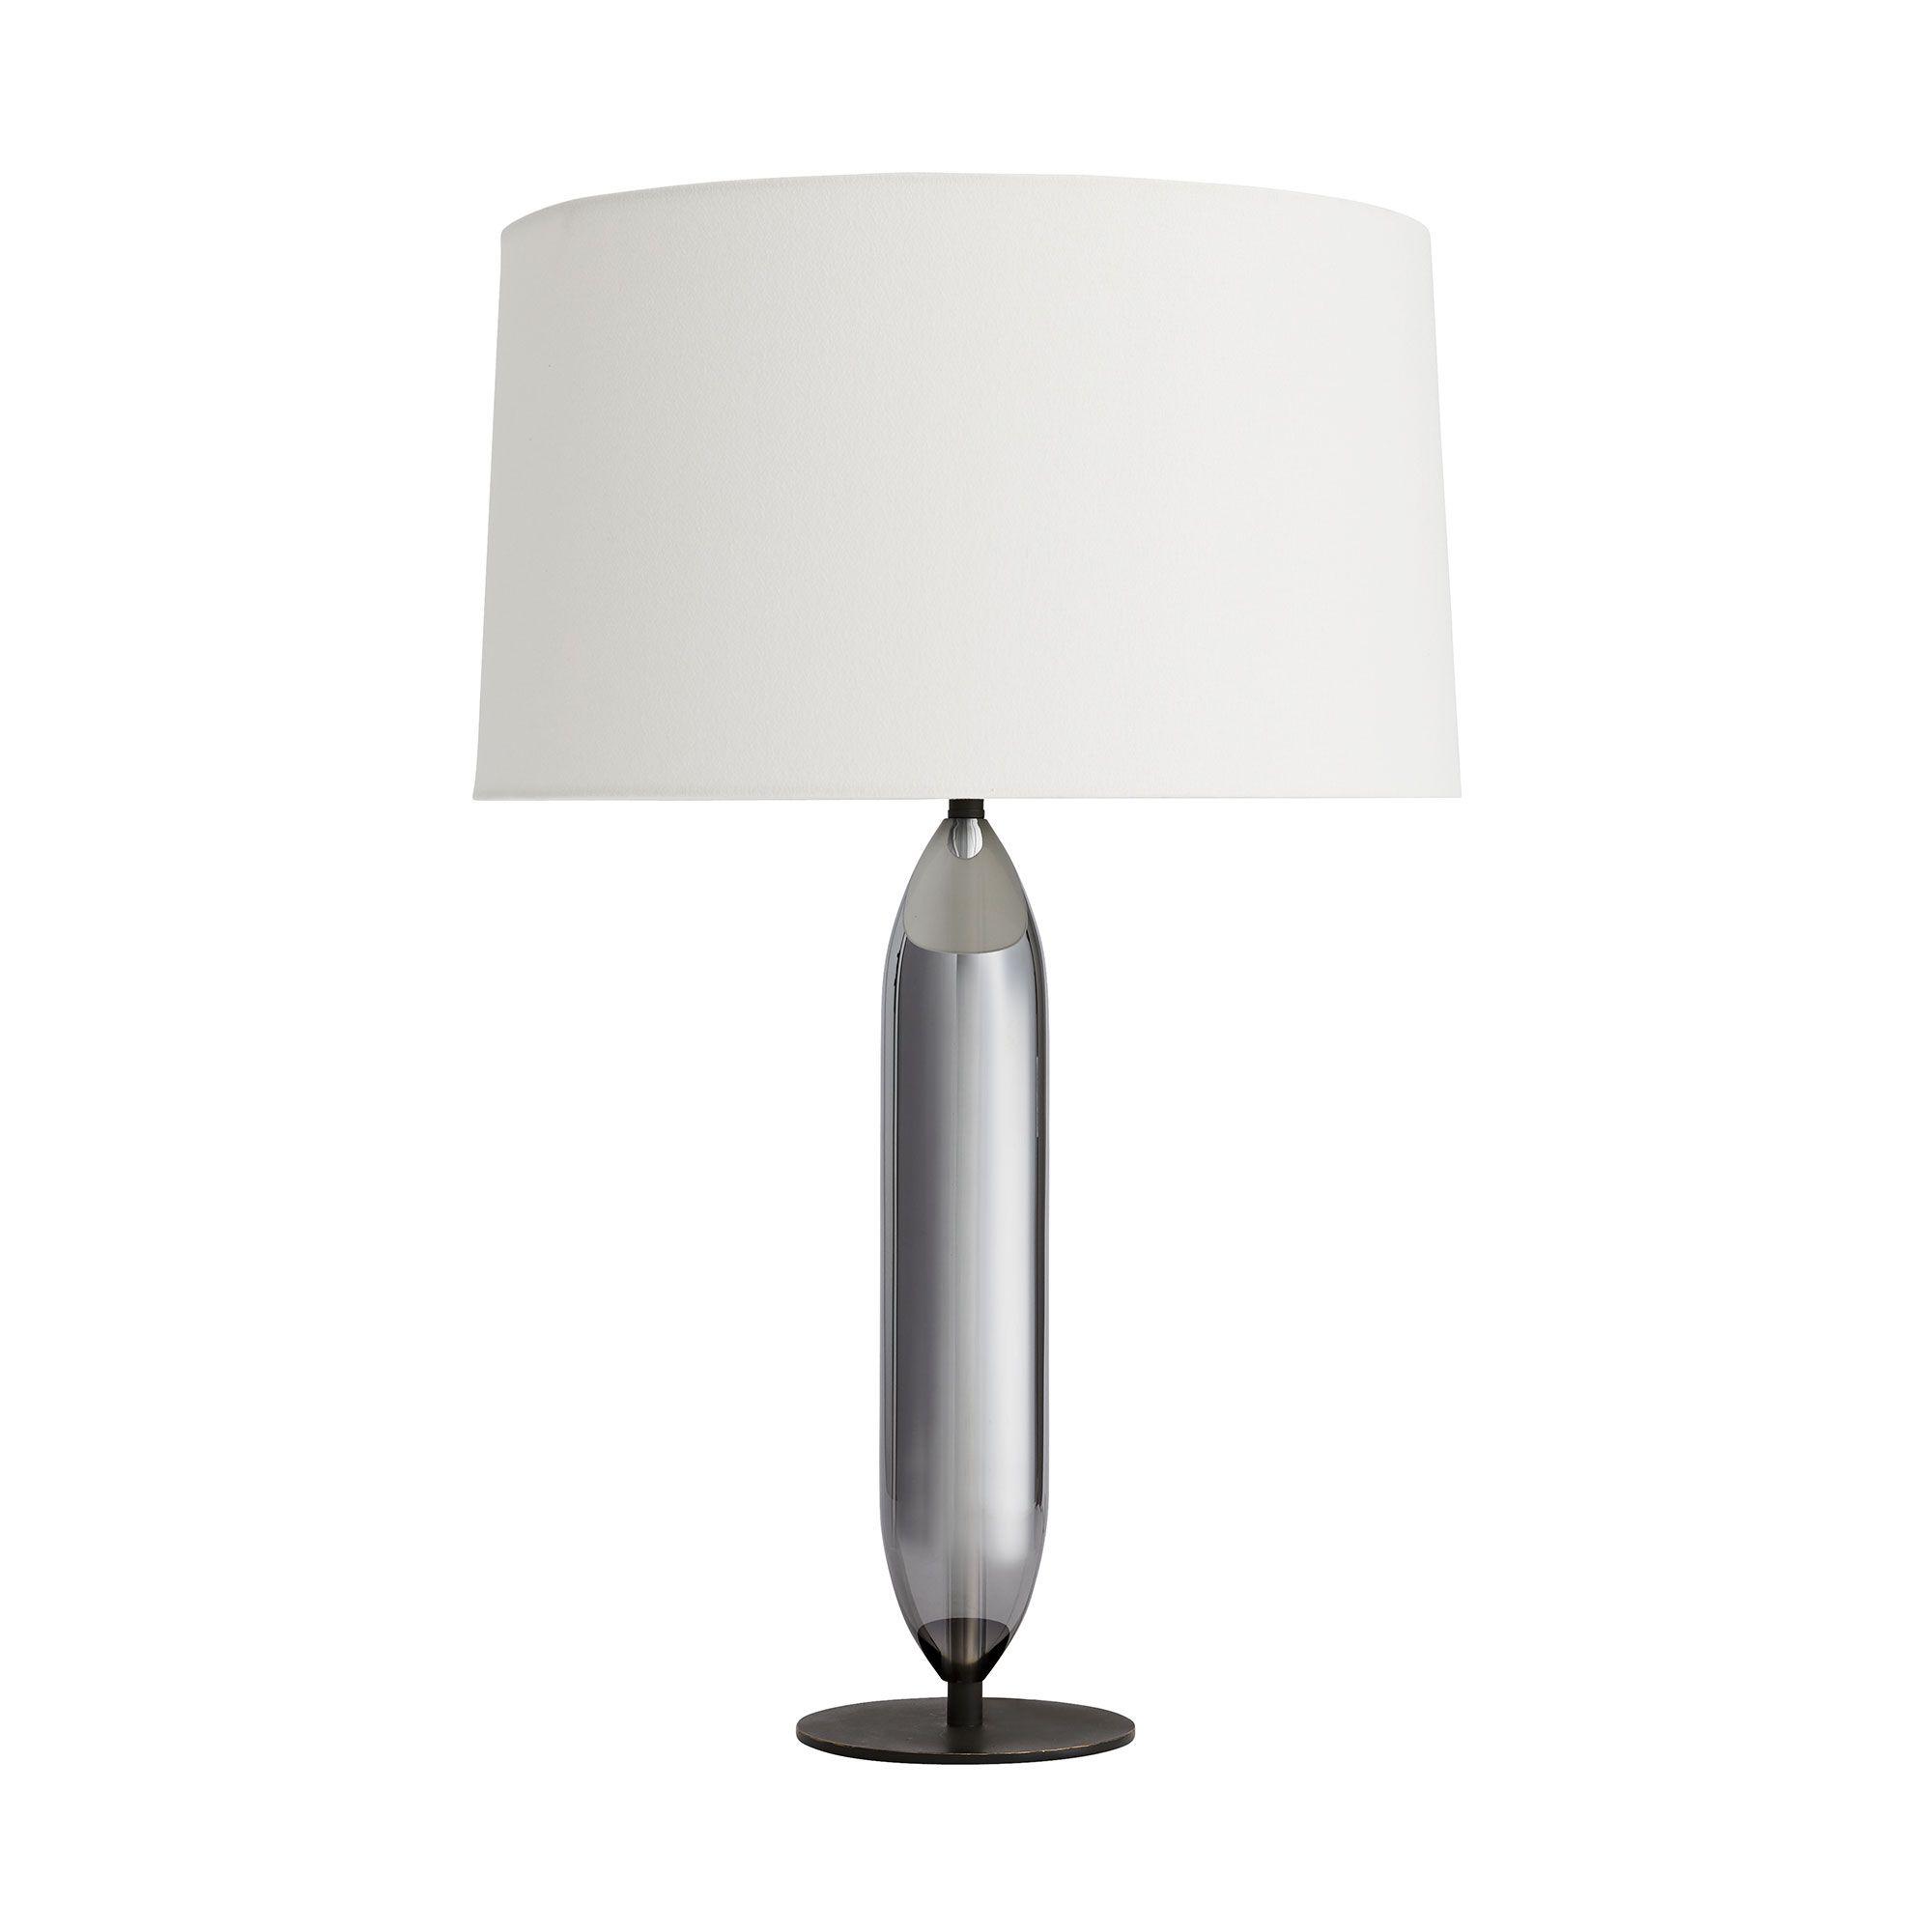 Купить Настольная лампа Irene Lamp в интернет-магазине roooms.ru